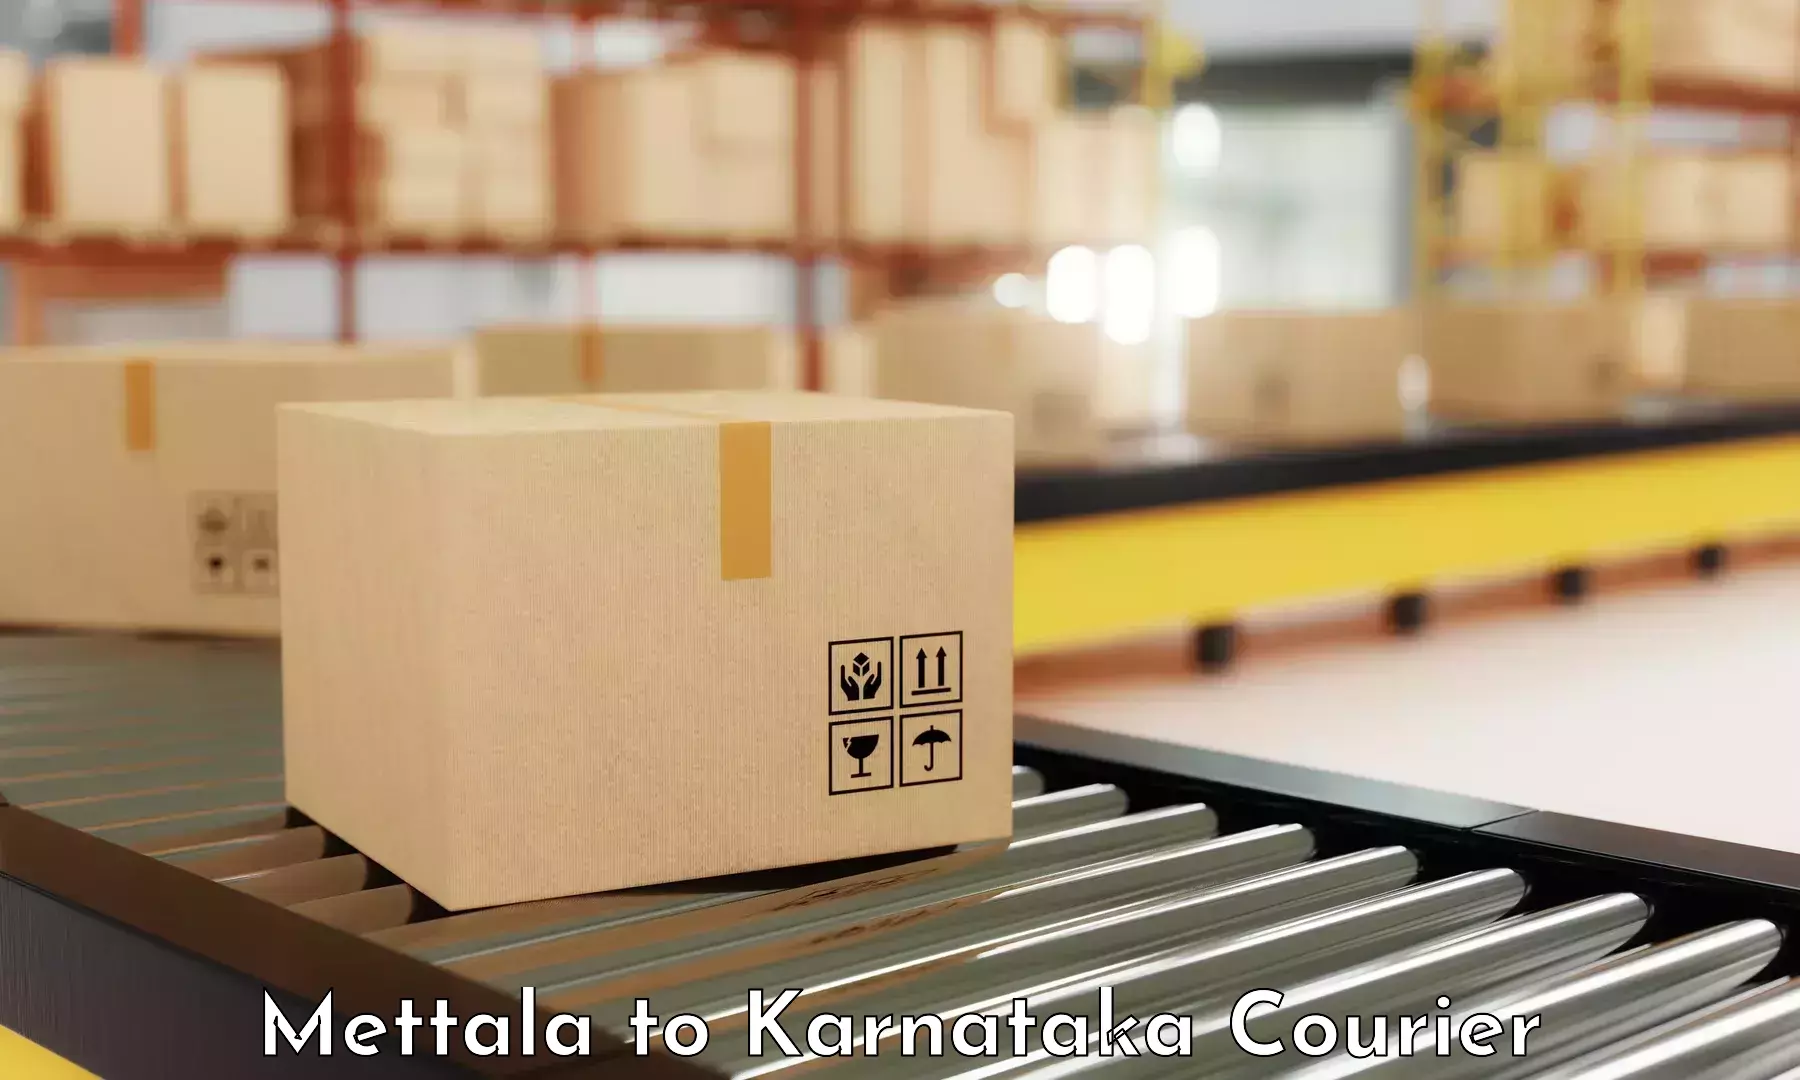 Premium courier services Mettala to Karnataka